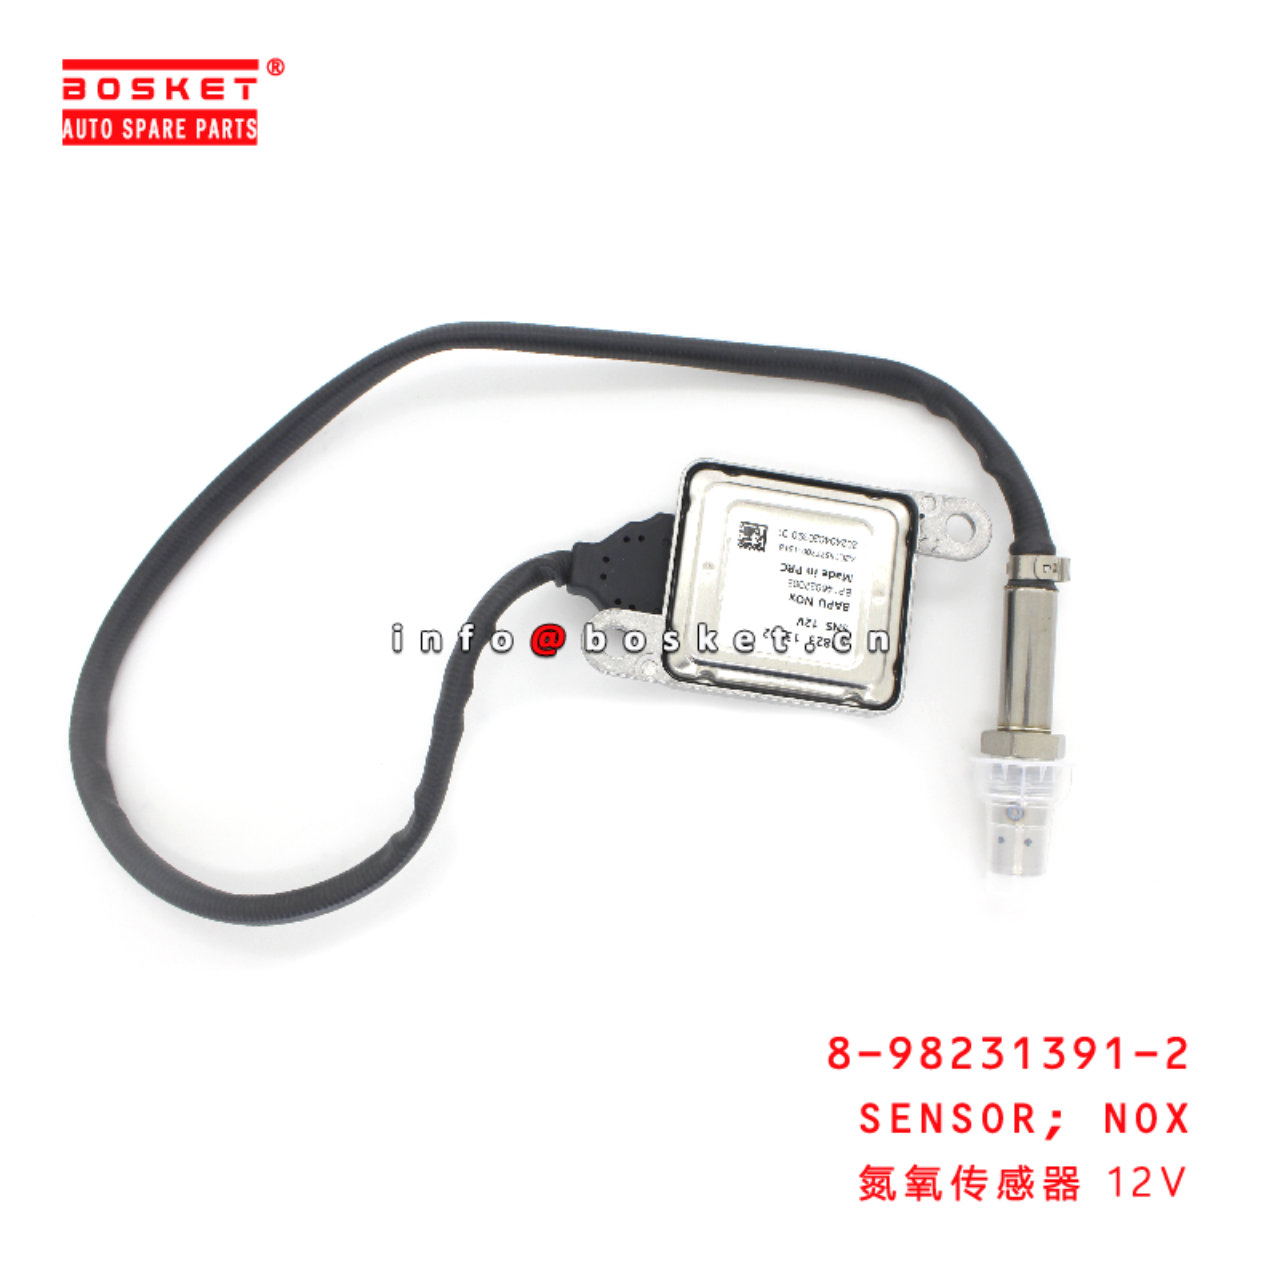 8-98231391-2 Nox Sensor suitable for ISUZU 8982313912